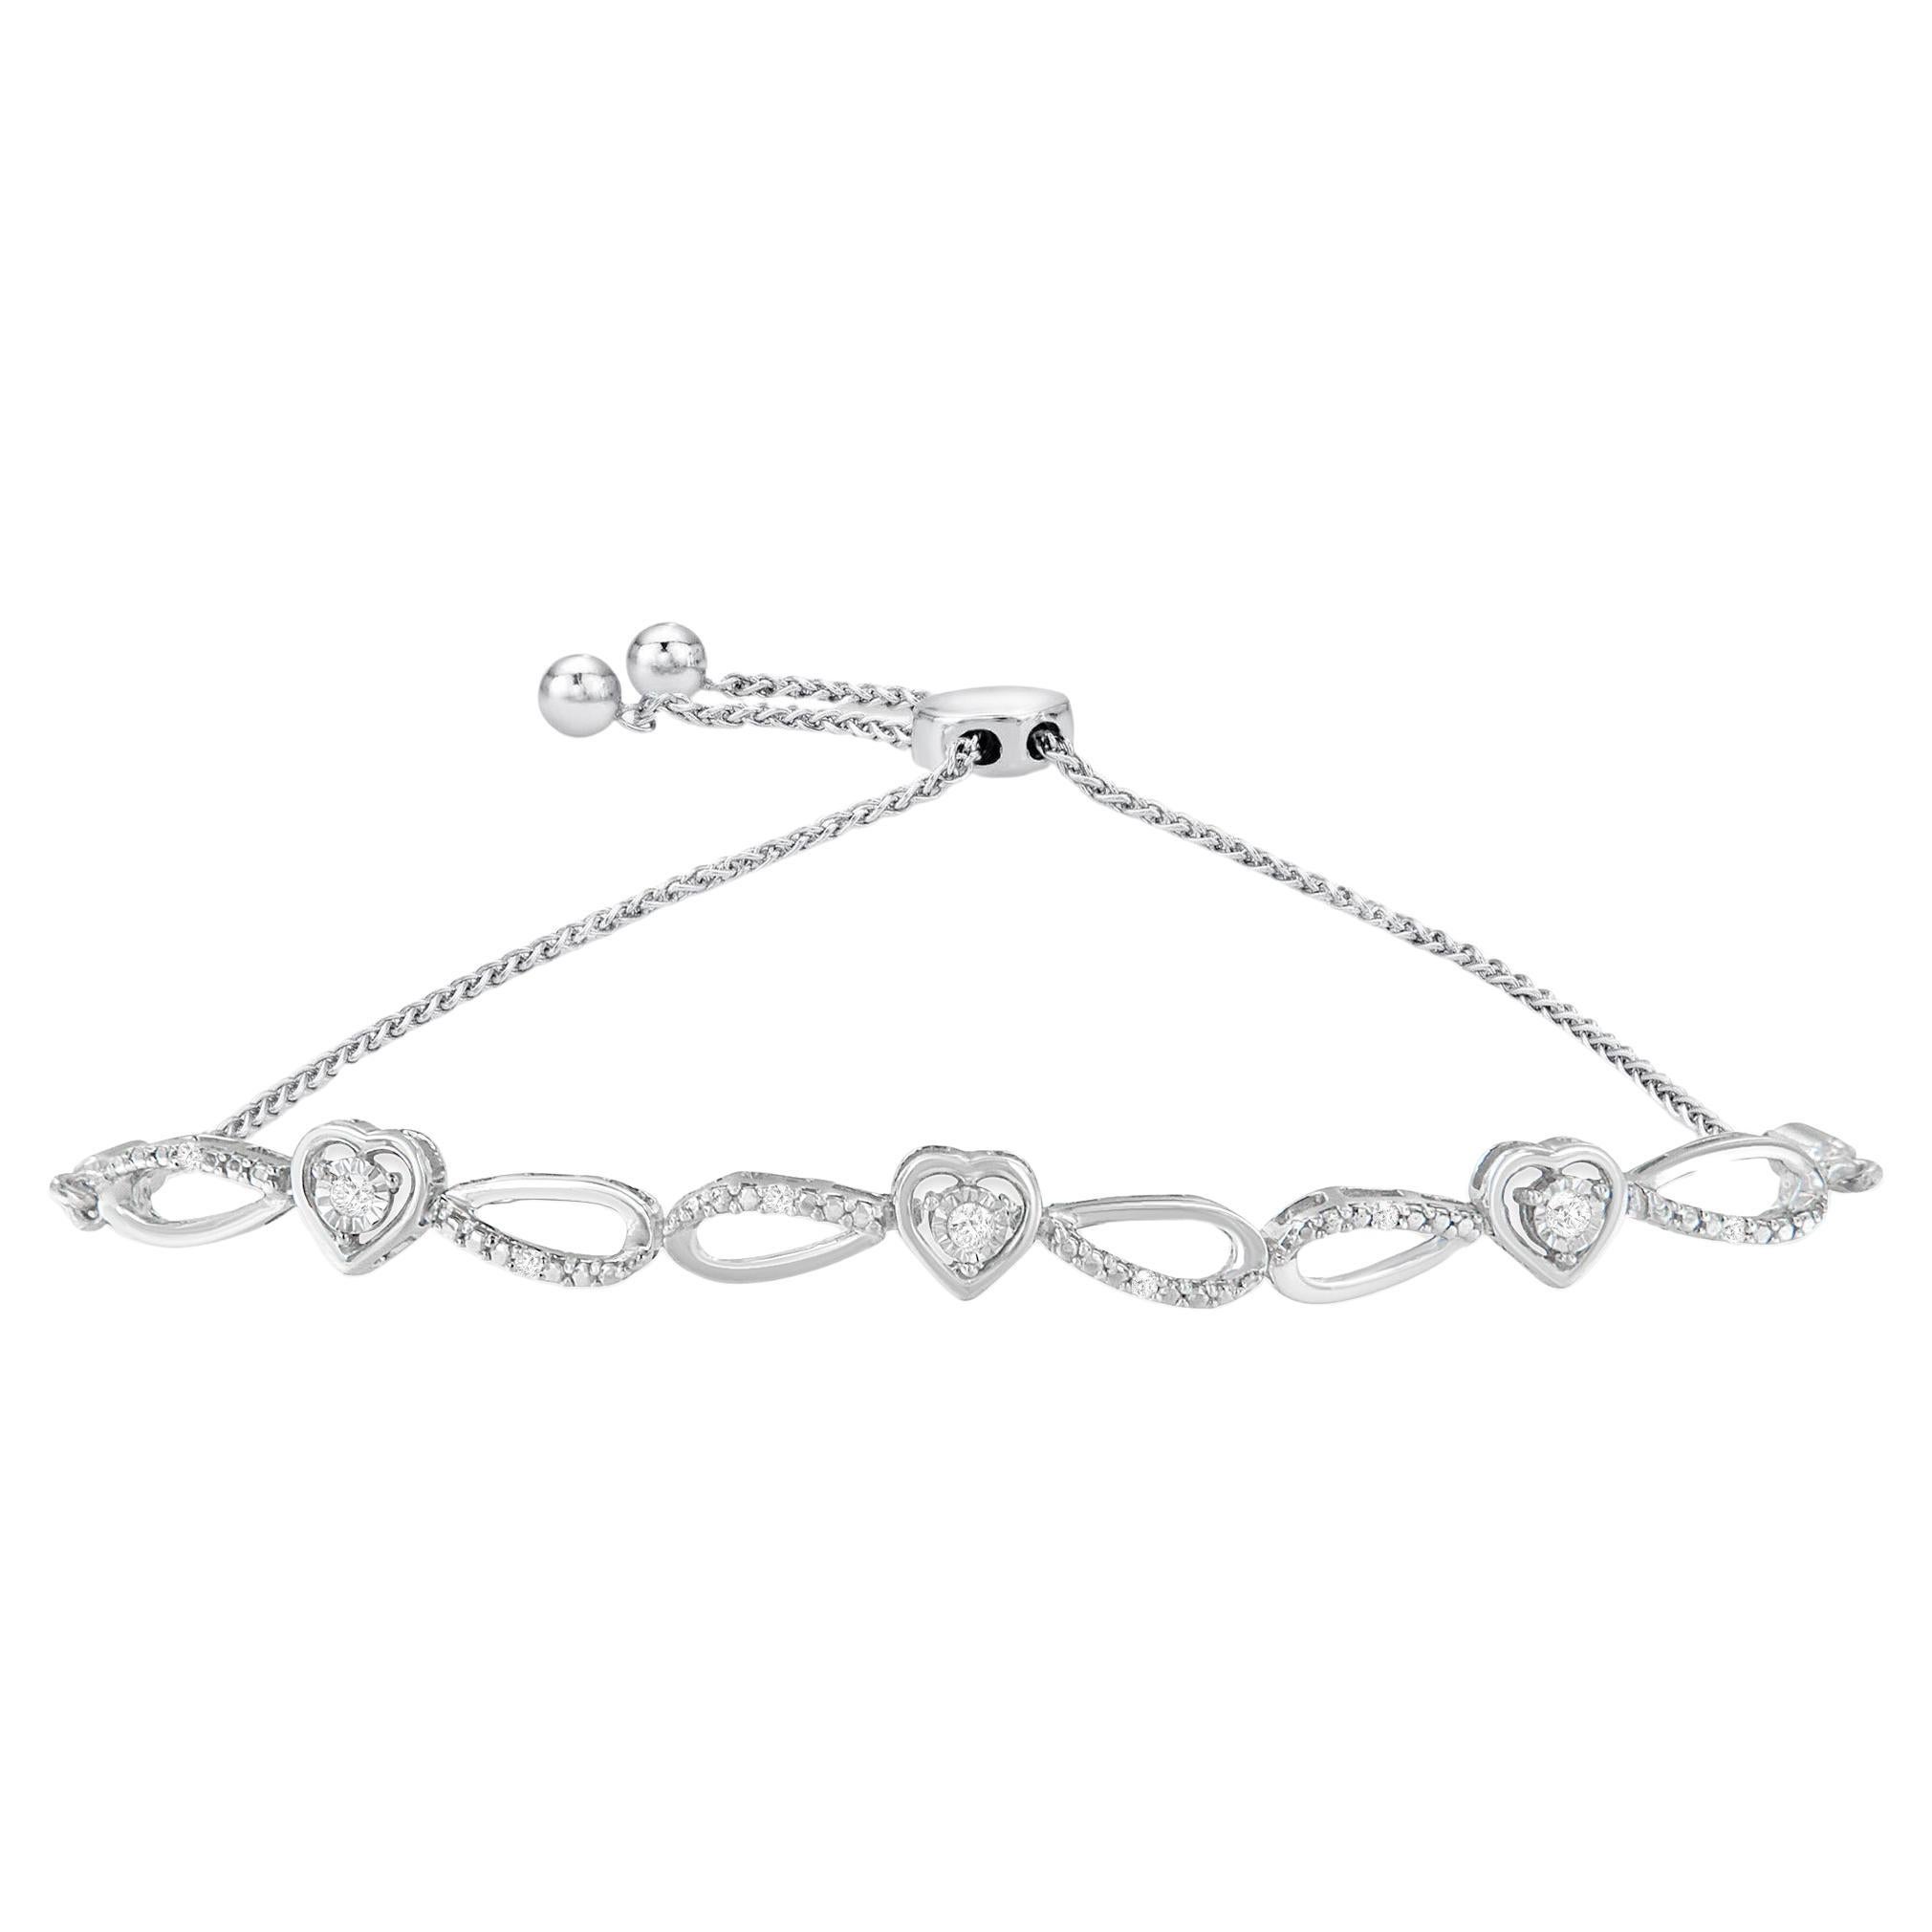 A Silver 1/10 Cttw Diamond Triple Heart-in-Infinity Bolo Style Adjustable Bracelet